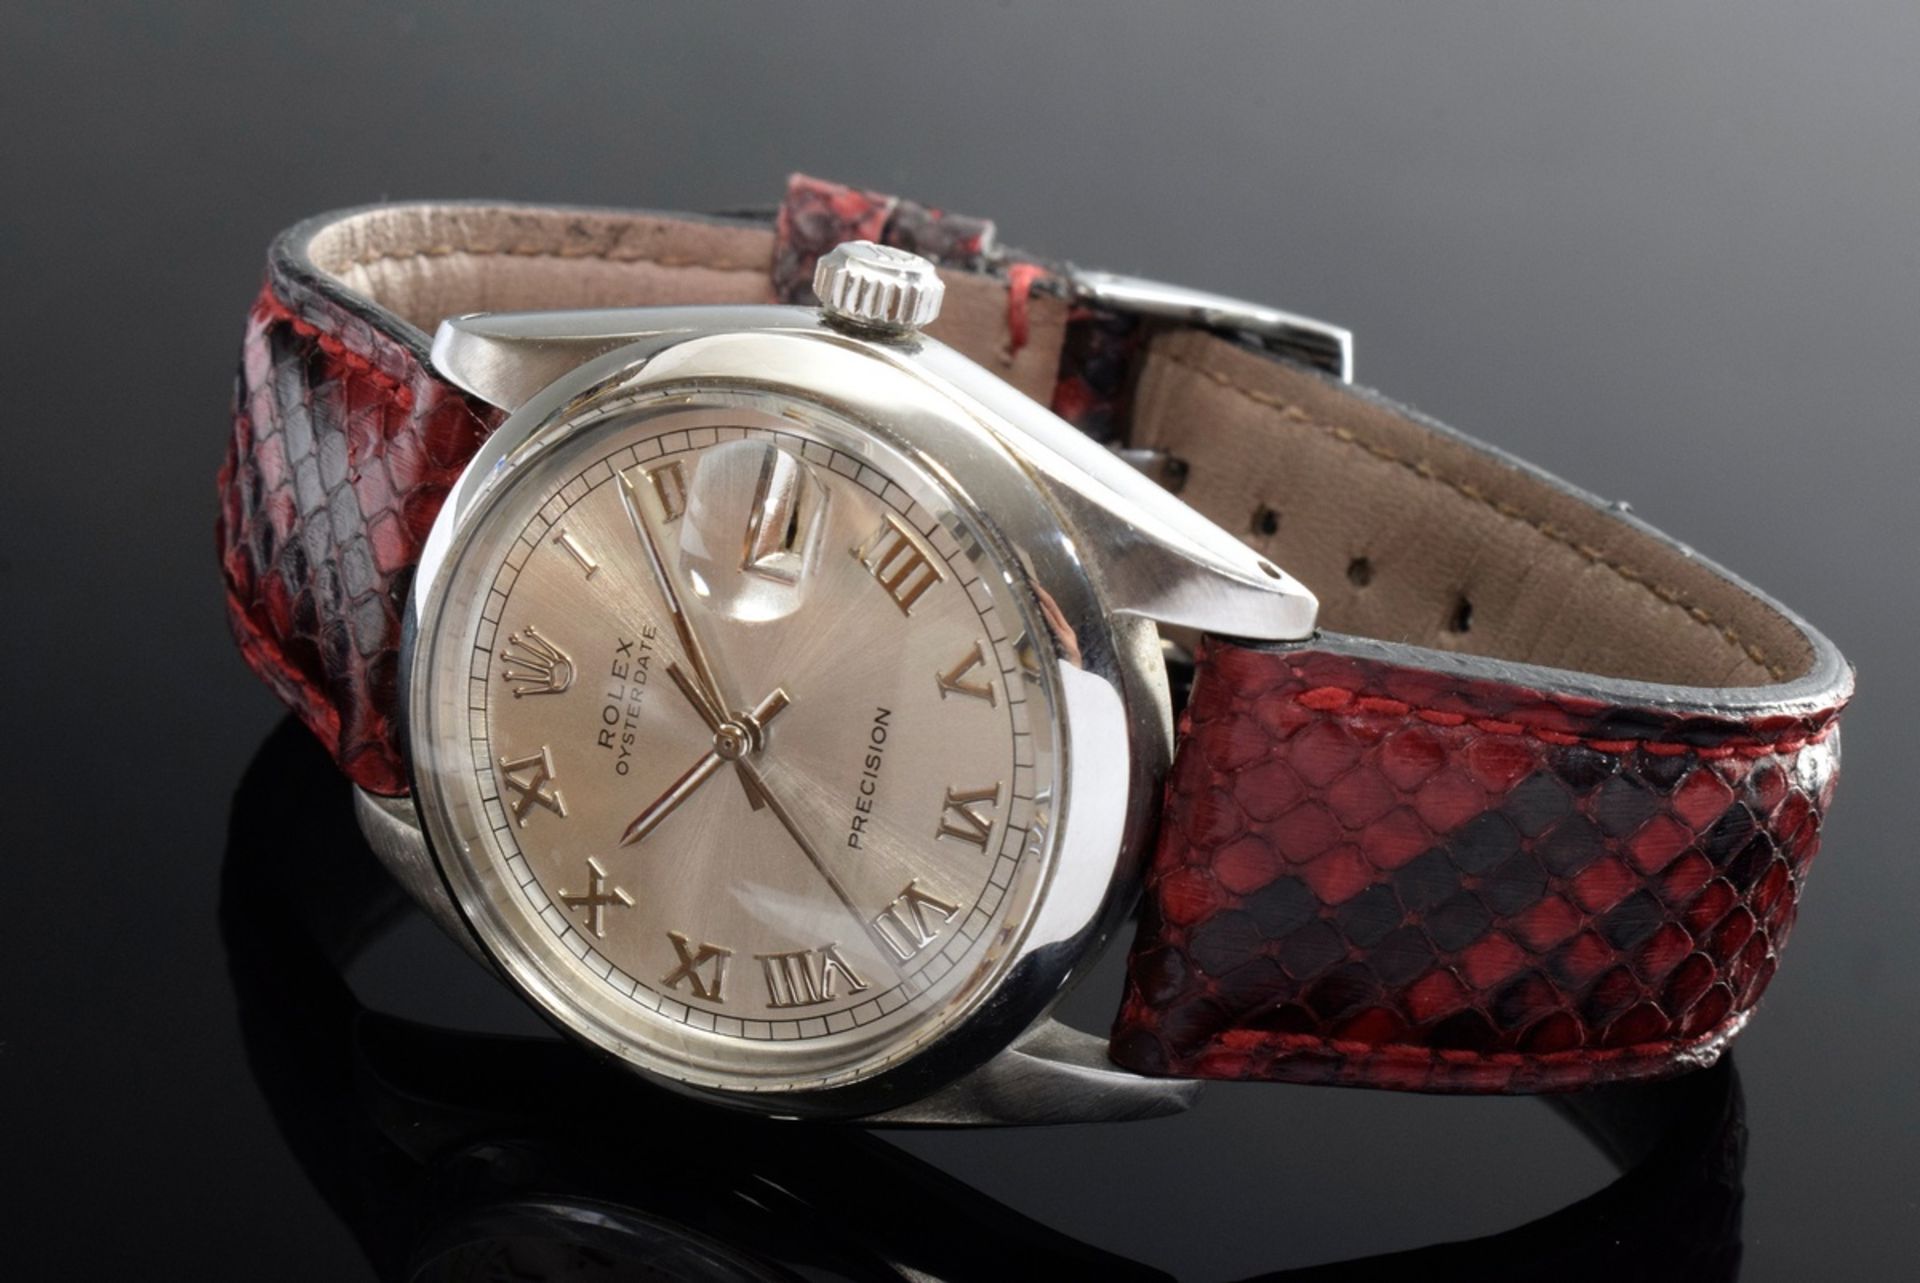 Rolex "Oysterdate Precision" Armbanduhr, Stahl, Handaufzug, römische Ziffern, große Sekunde, Datum 